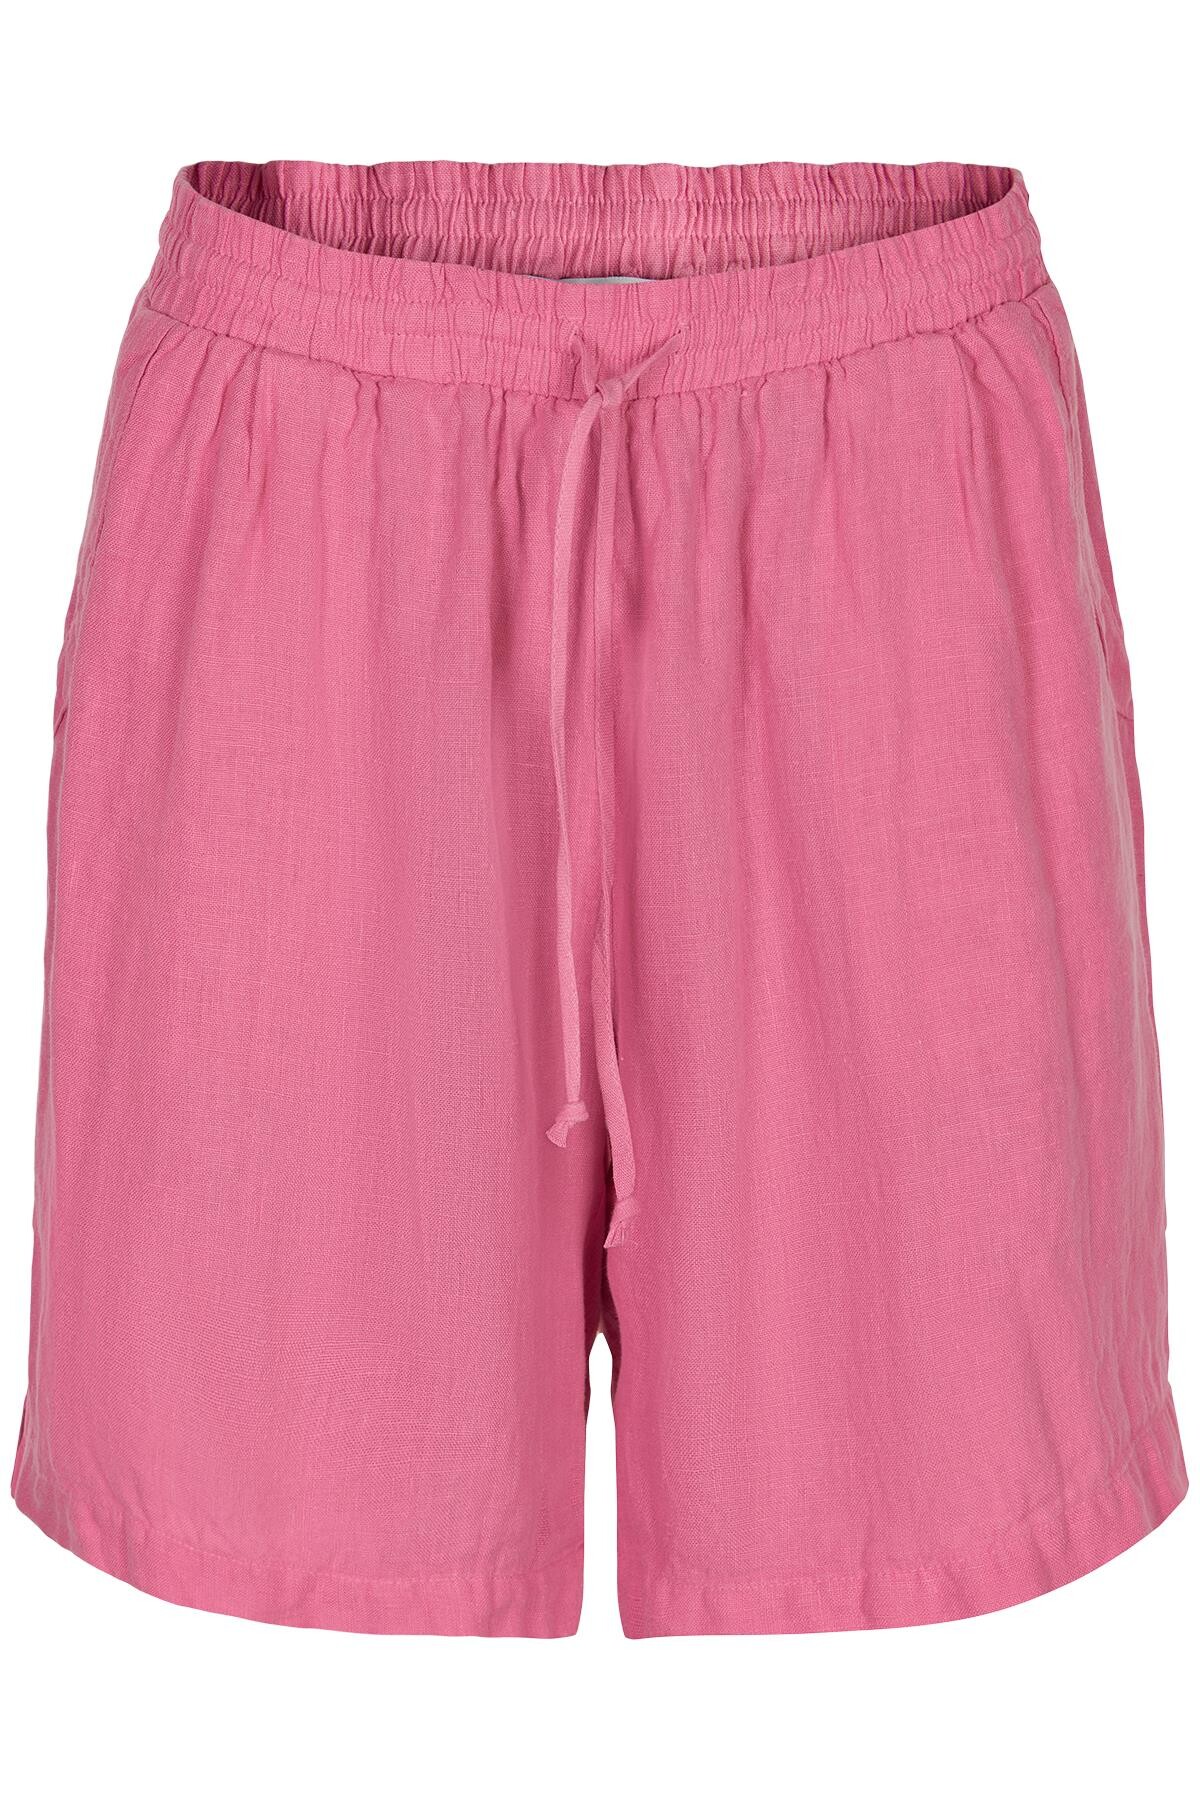 In Front Lino Shorts, Farve: Pink, Størrelse: M, Dame